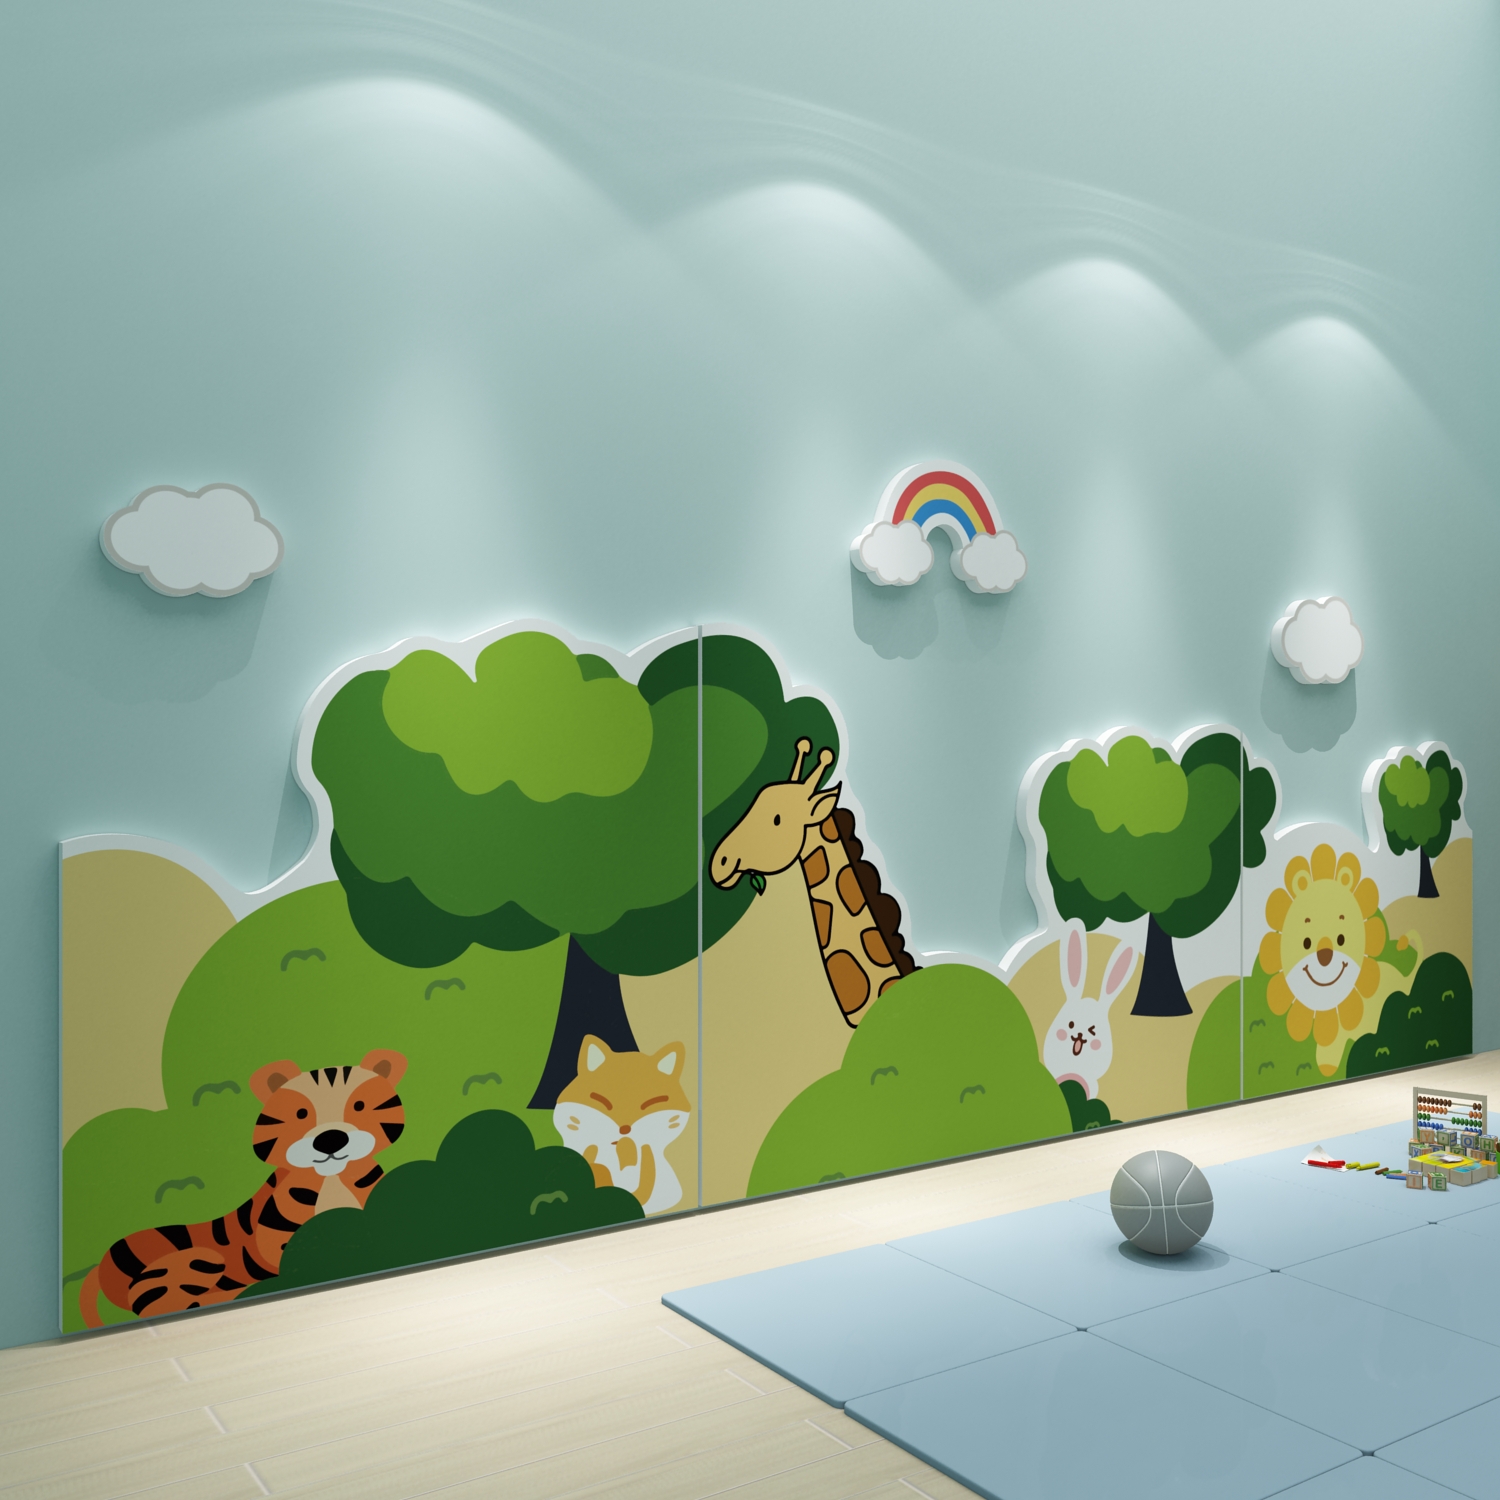 幼儿园墙面装 饰环创主题成品环境布置材料神器贴楼梯走廊文化教室